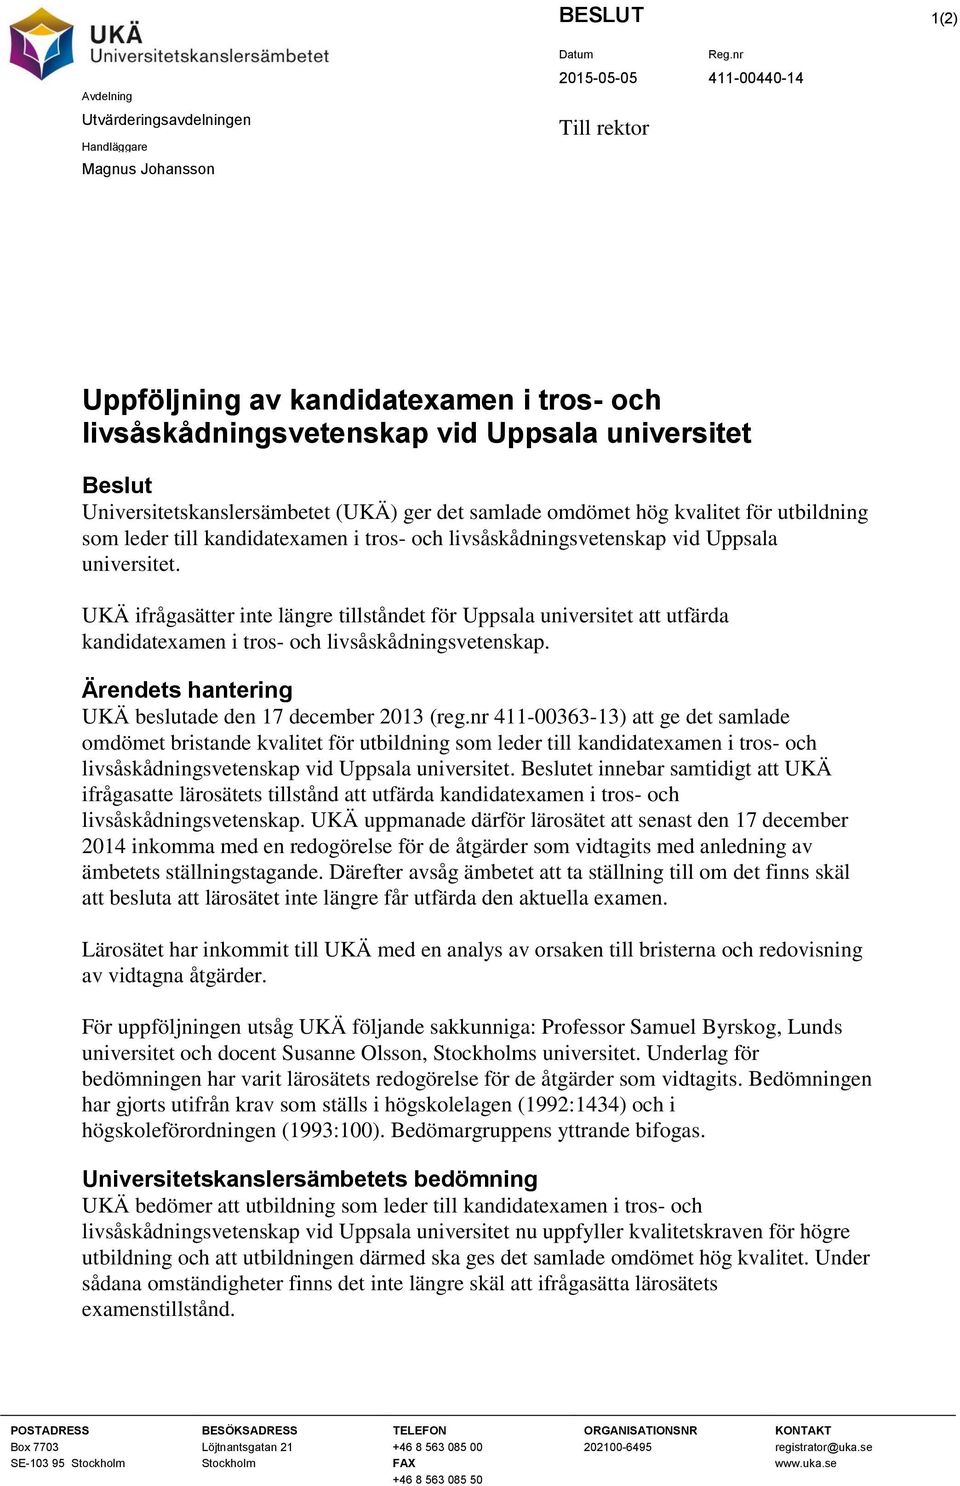 UKÄ ifrågasätter inte längre tillståndet för Uppsala universitet att utfärda kandidatexamen i tros- och livsåskådningsvetenskap. Ärendets hantering UKÄ beslutade den 17 december 2013 (reg.